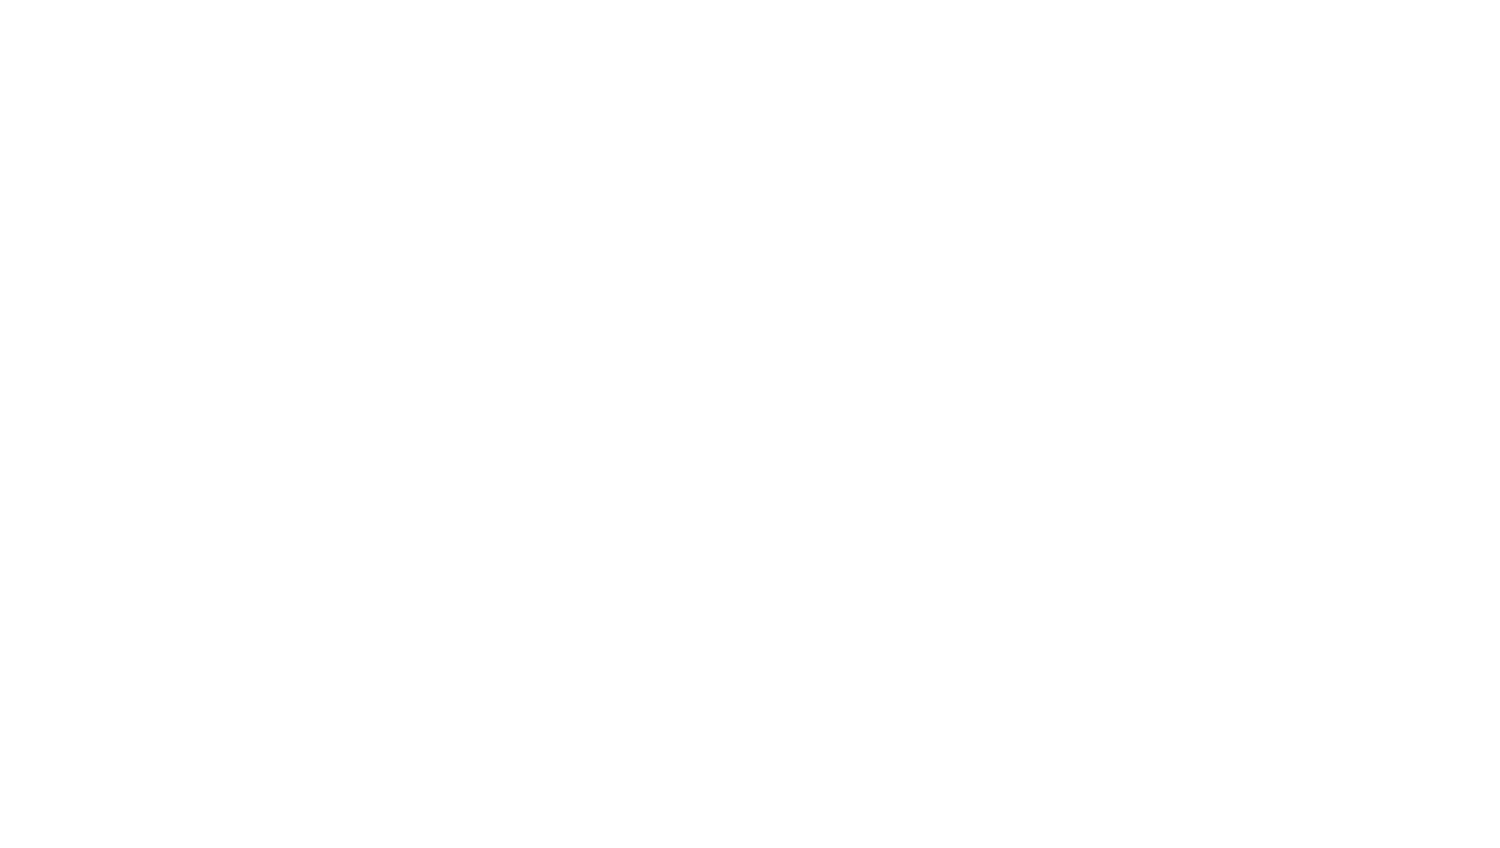 El Yunque Inns